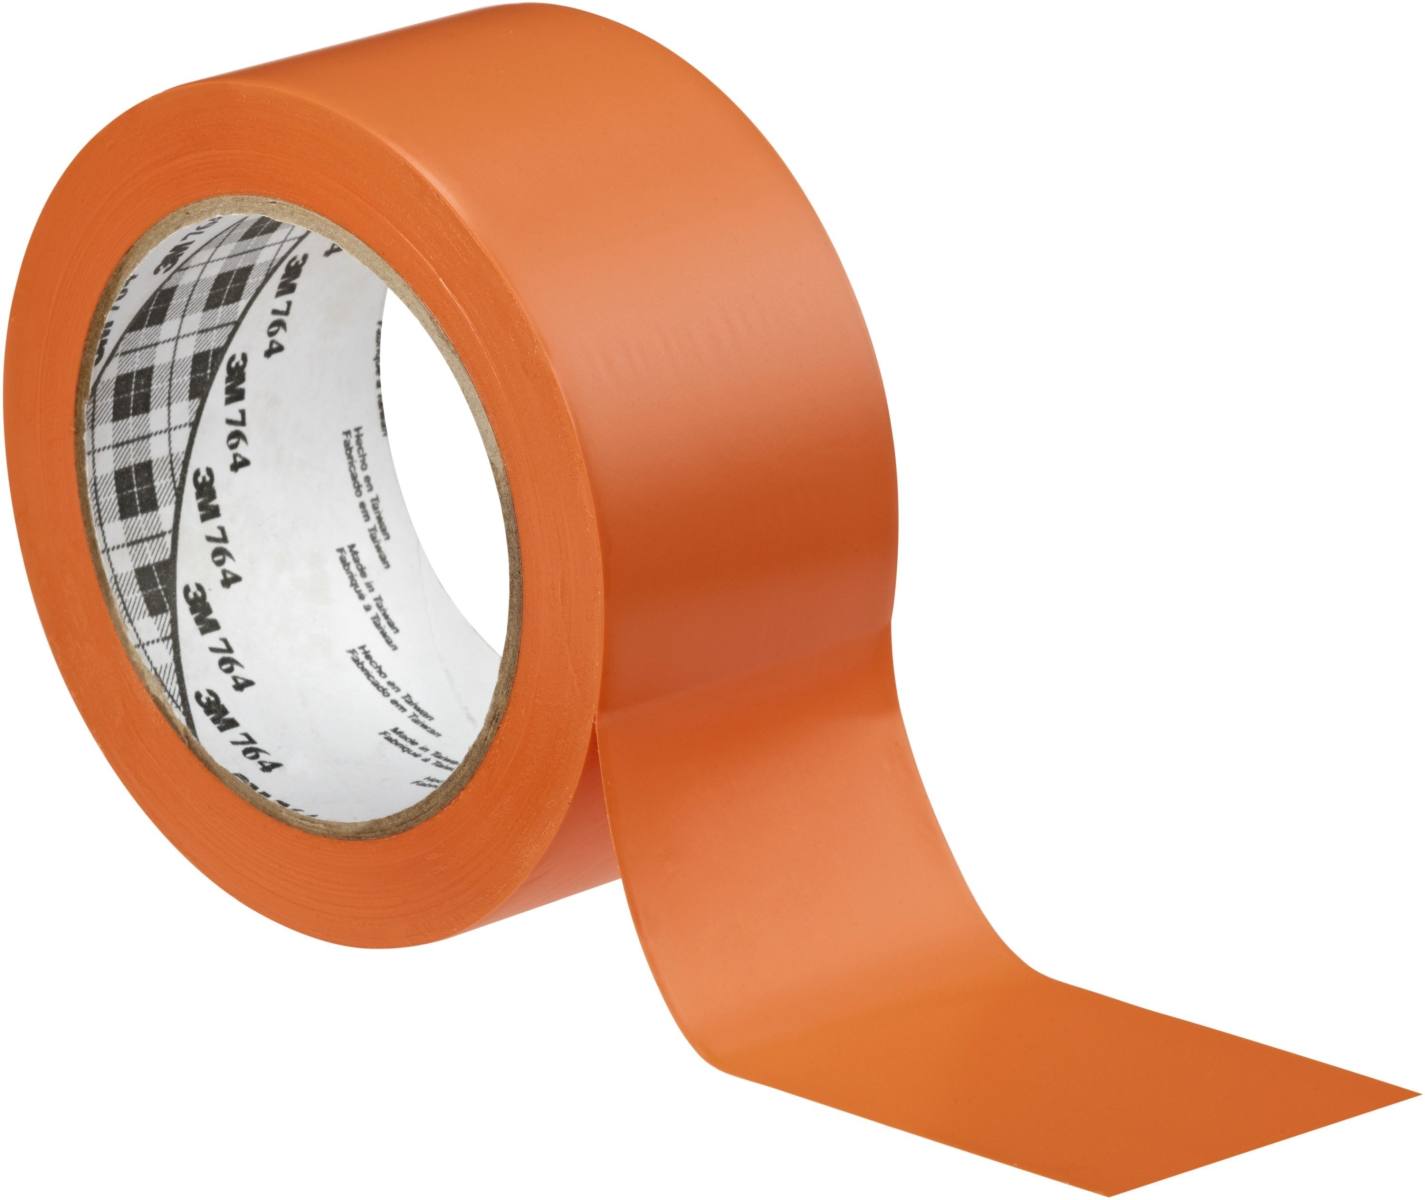 Nastro adesivo 3M per tutti gli usi in PVC 764, arancione, 50 mm x 33 m, confezionato singolarmente per praticità